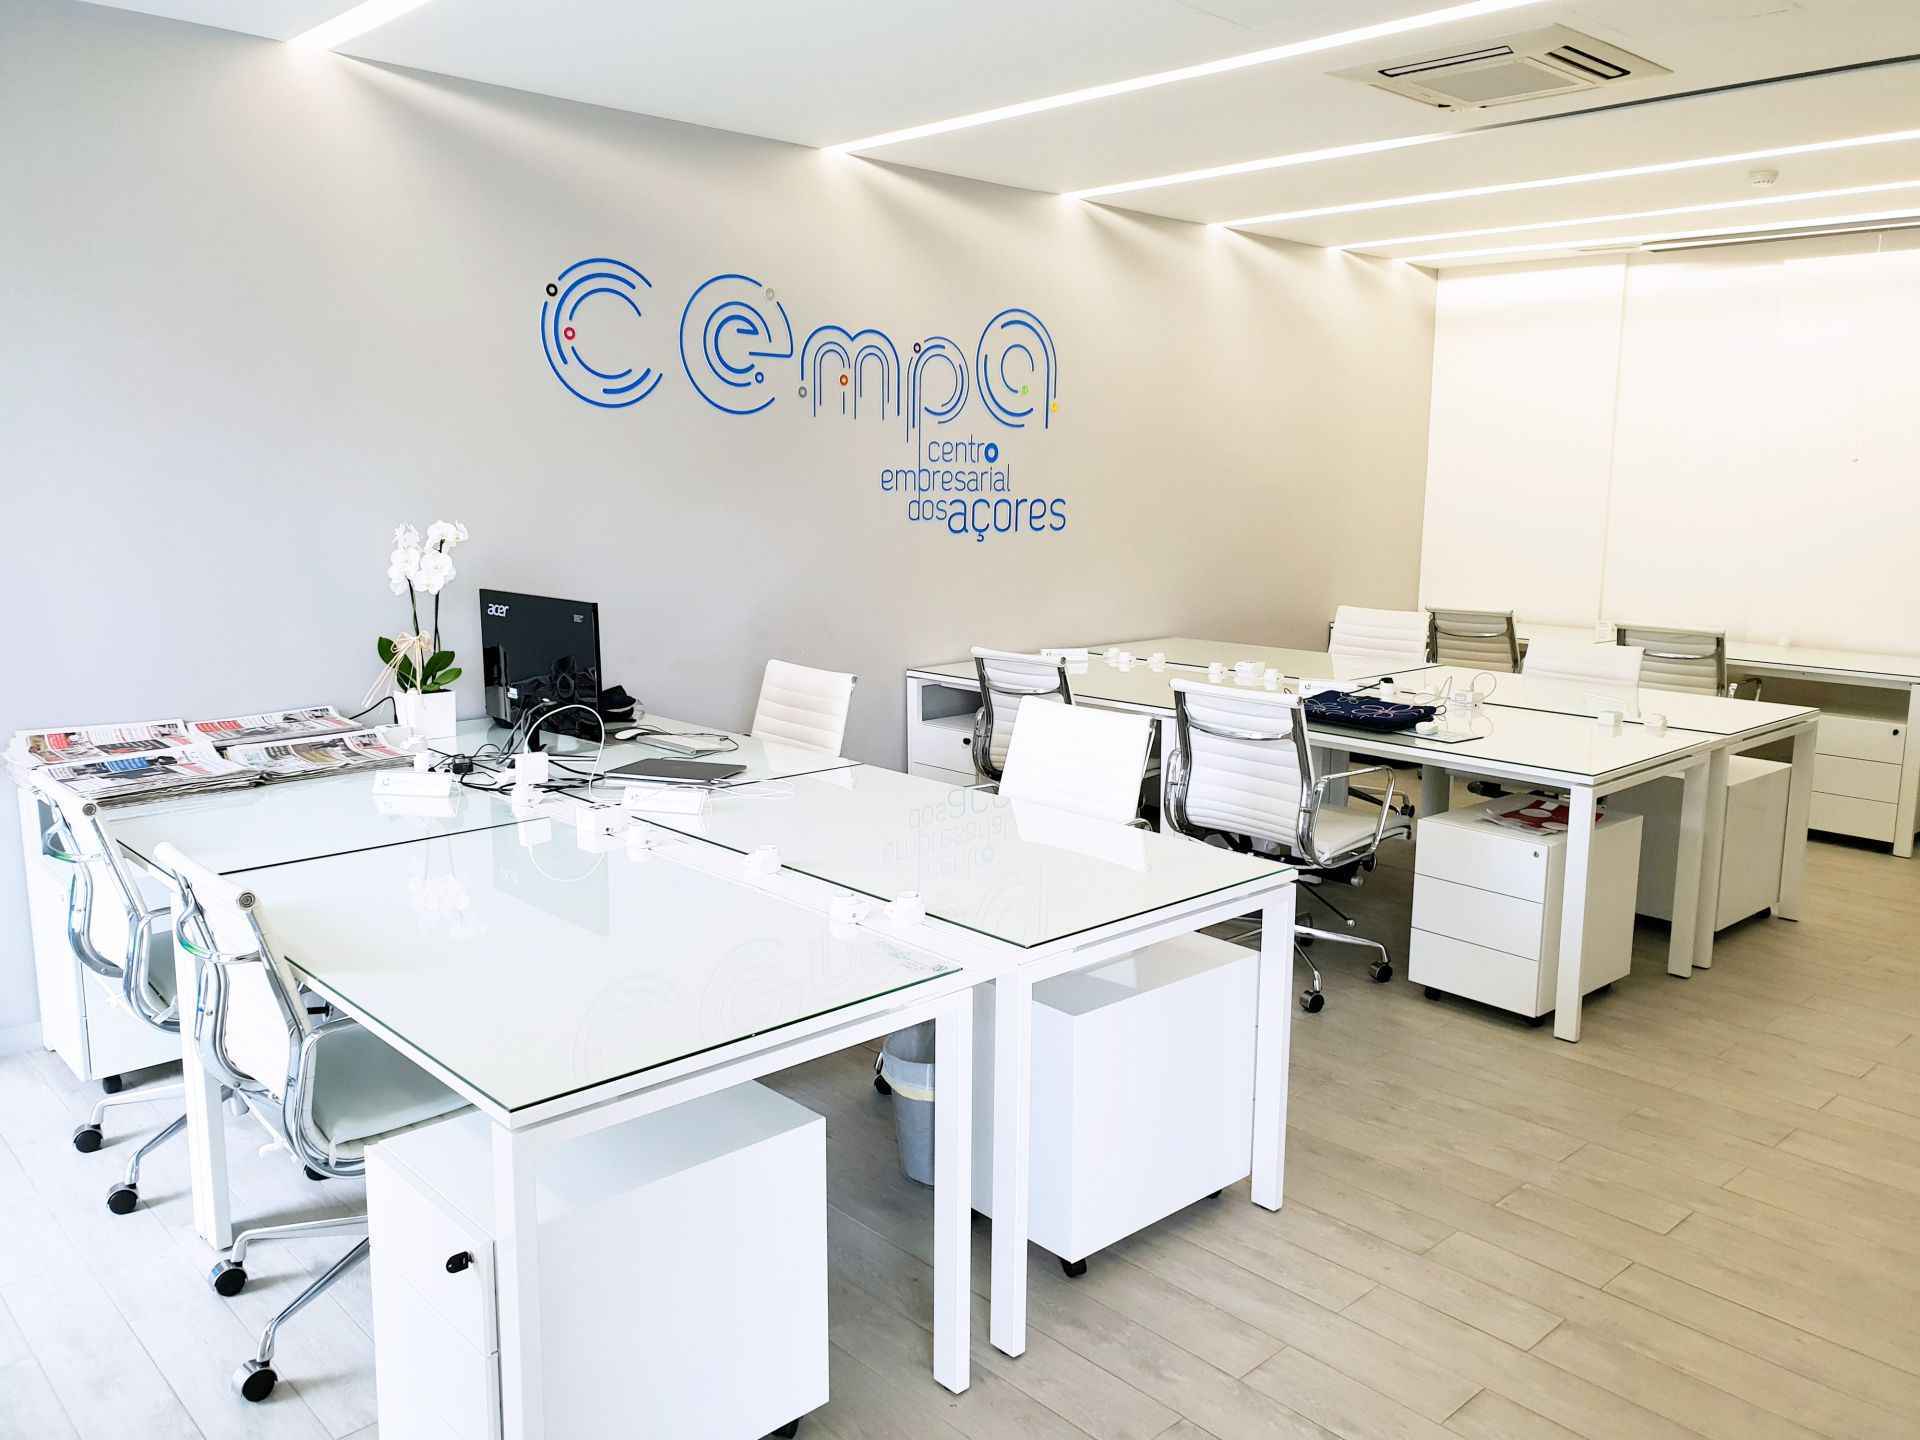 CEmpA Centro Empresarial dos Açores cover image